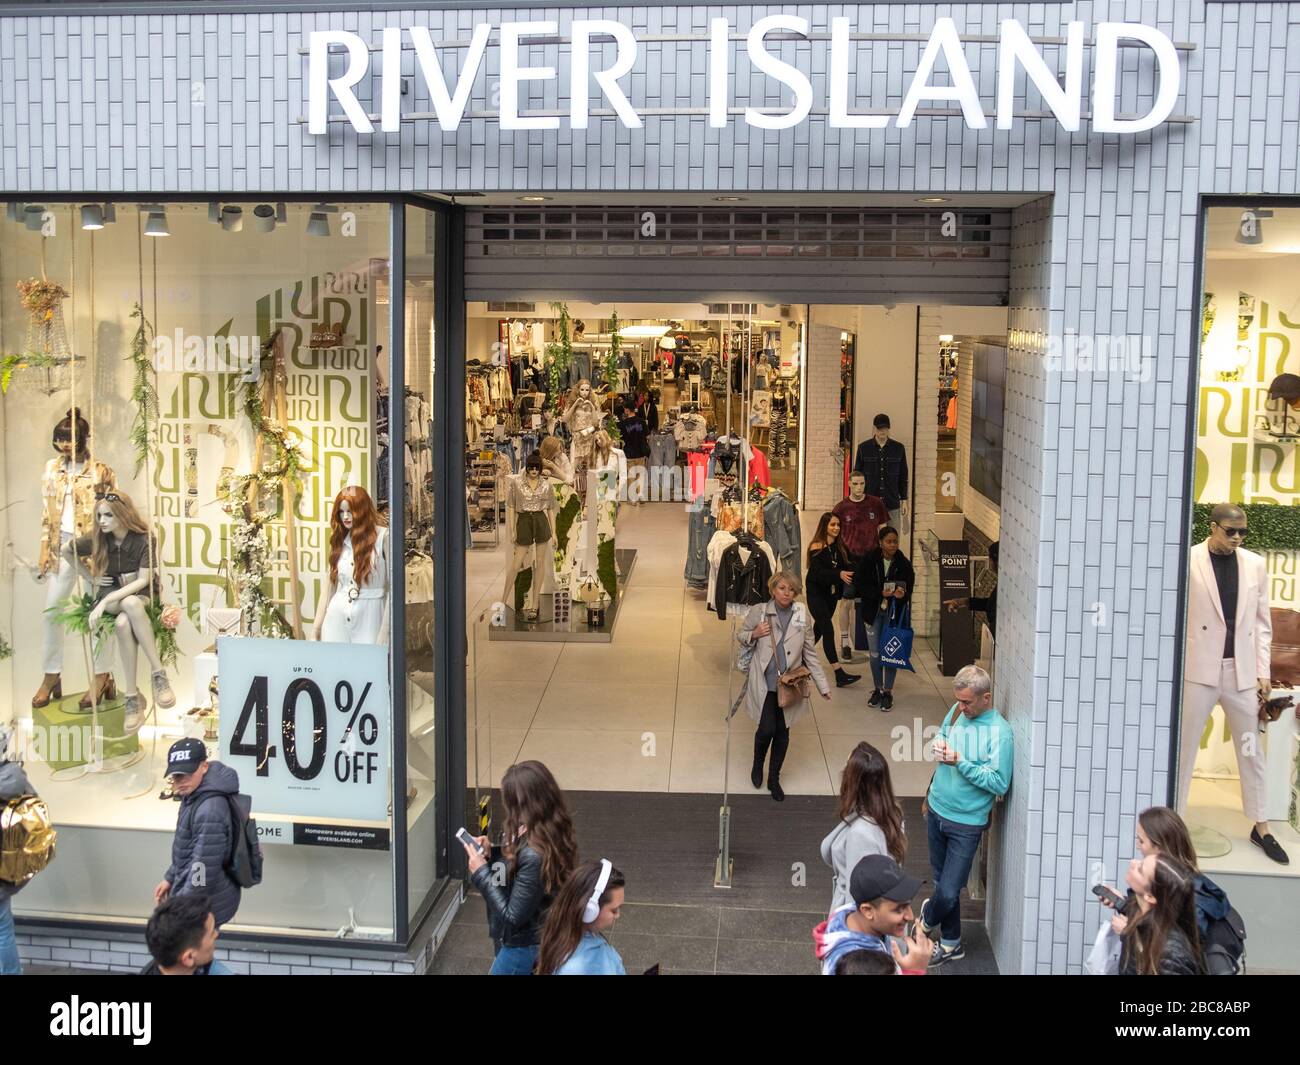 River Island - britische High-Street-Modemarke - Außenlogo/Beschilderung - London Stockfoto